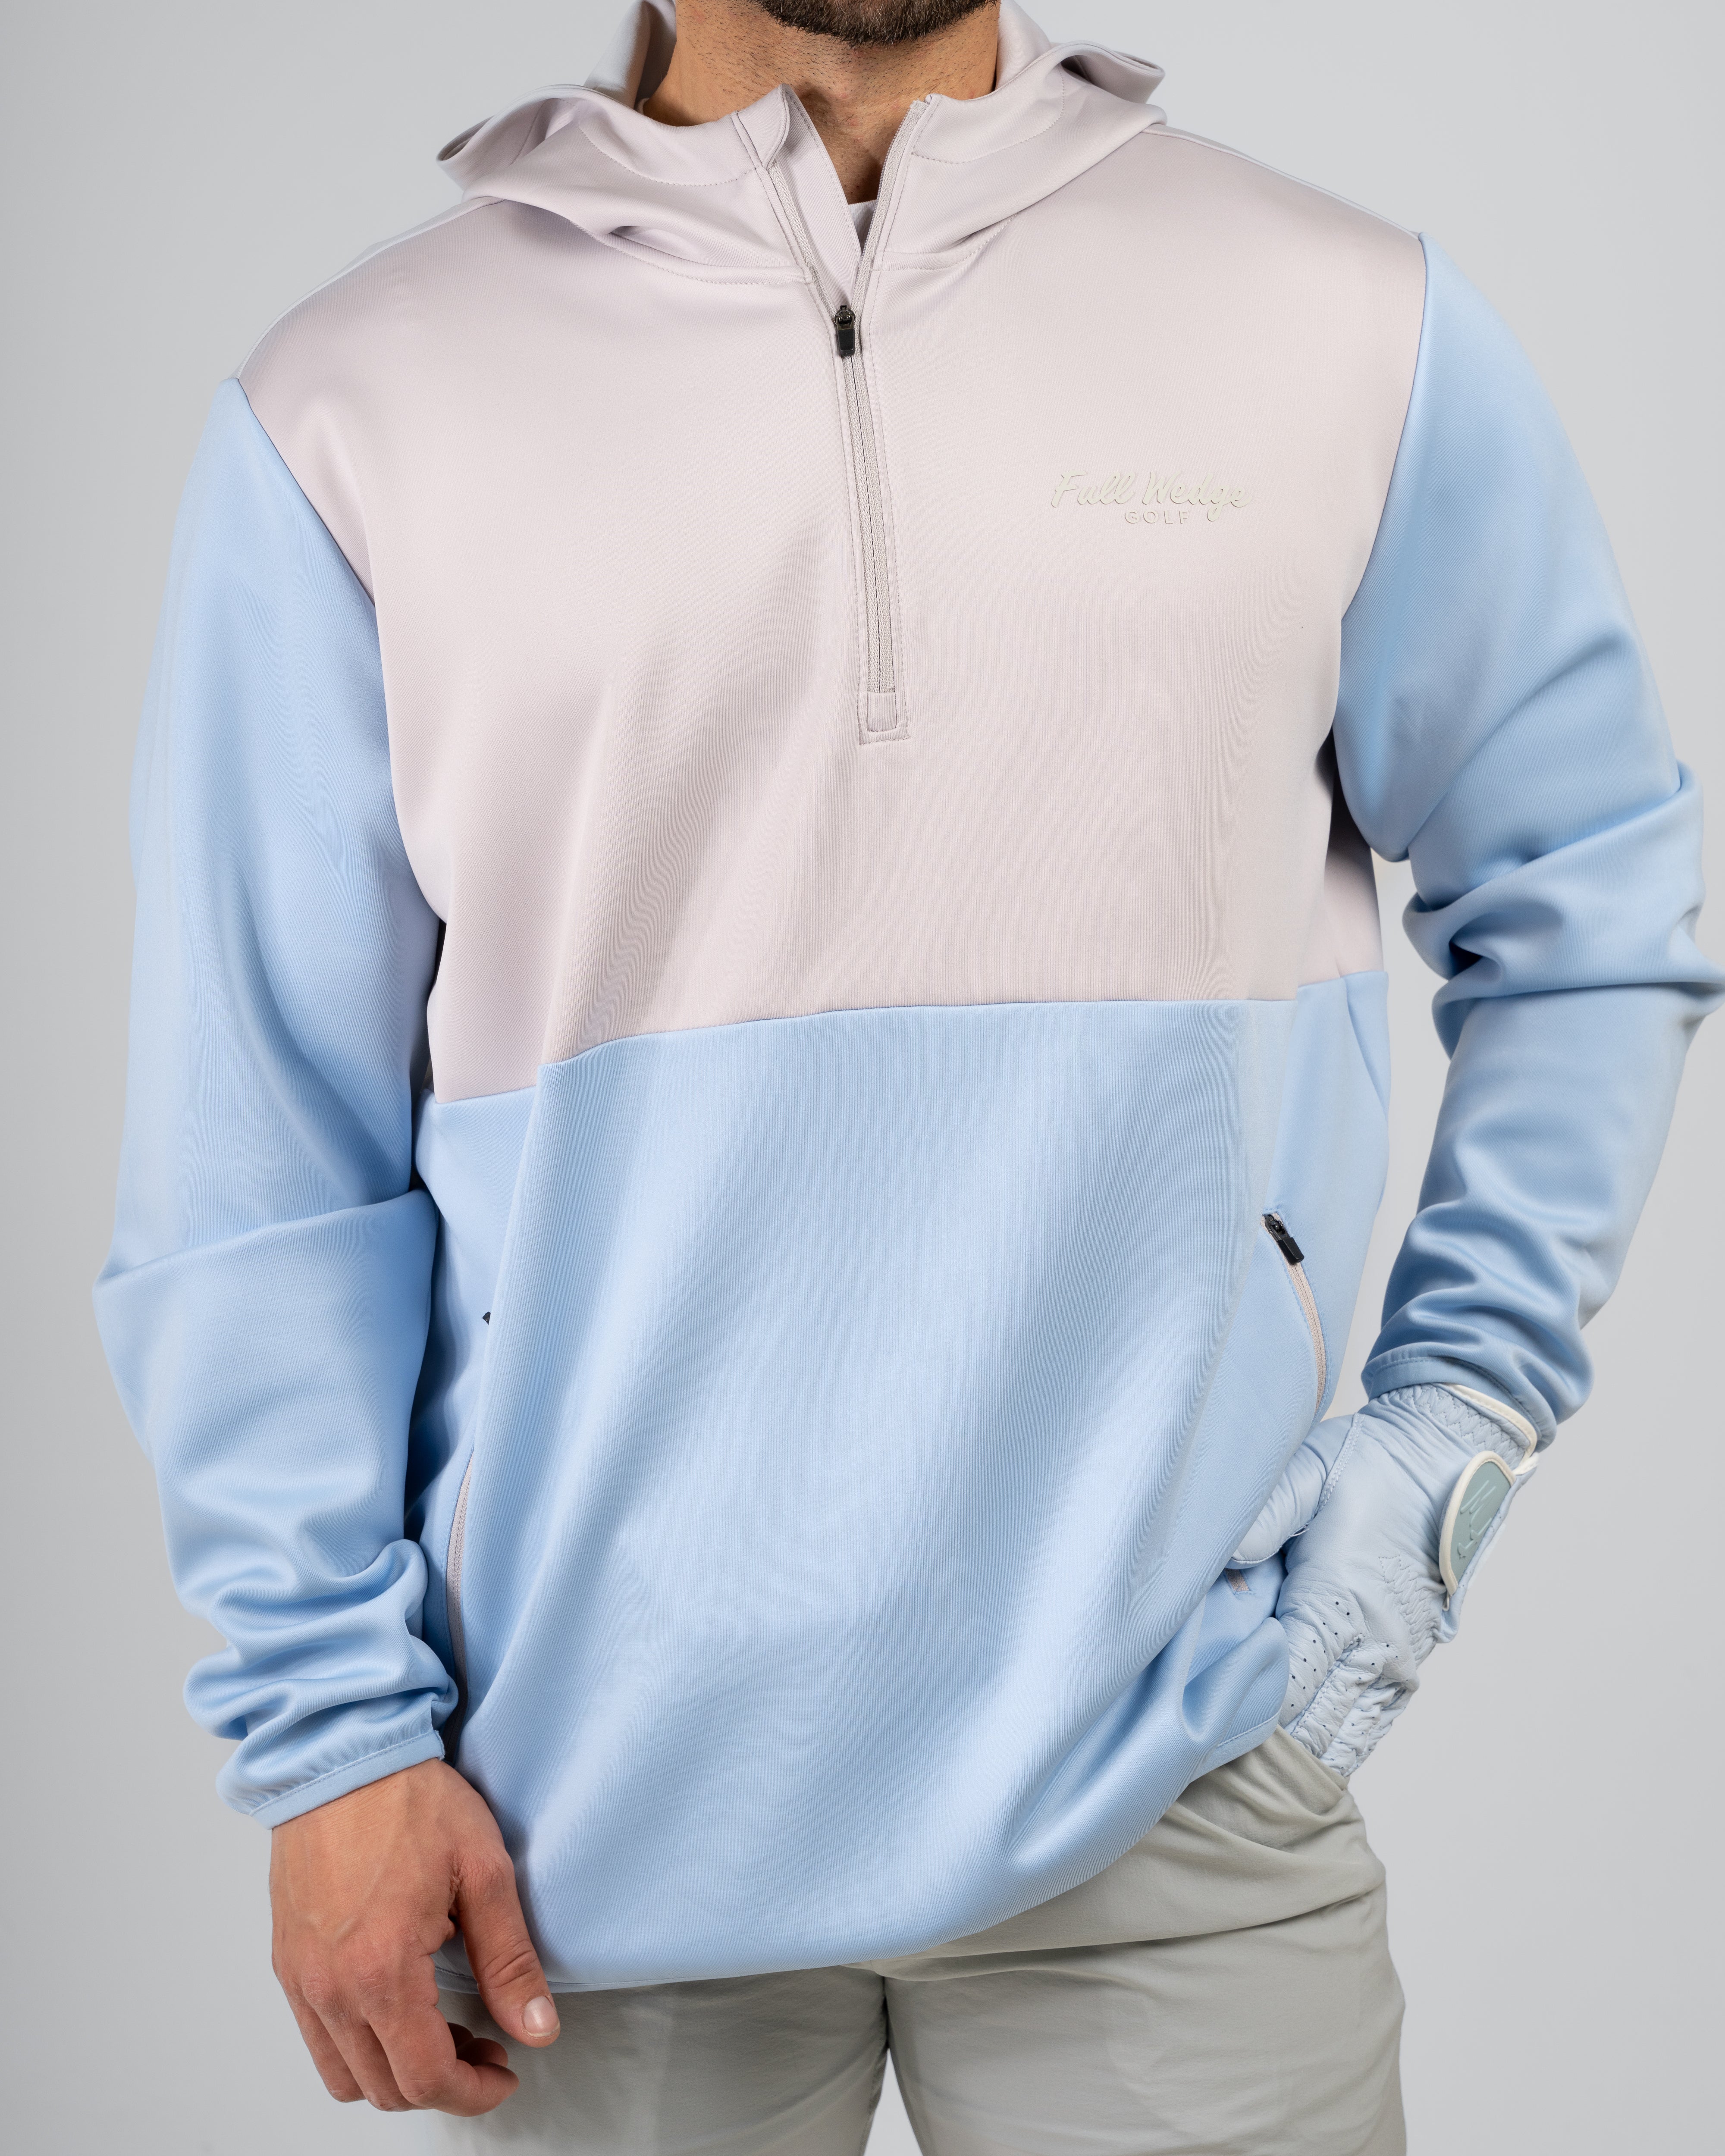 Men's Outerwear – Full Wedge Golf